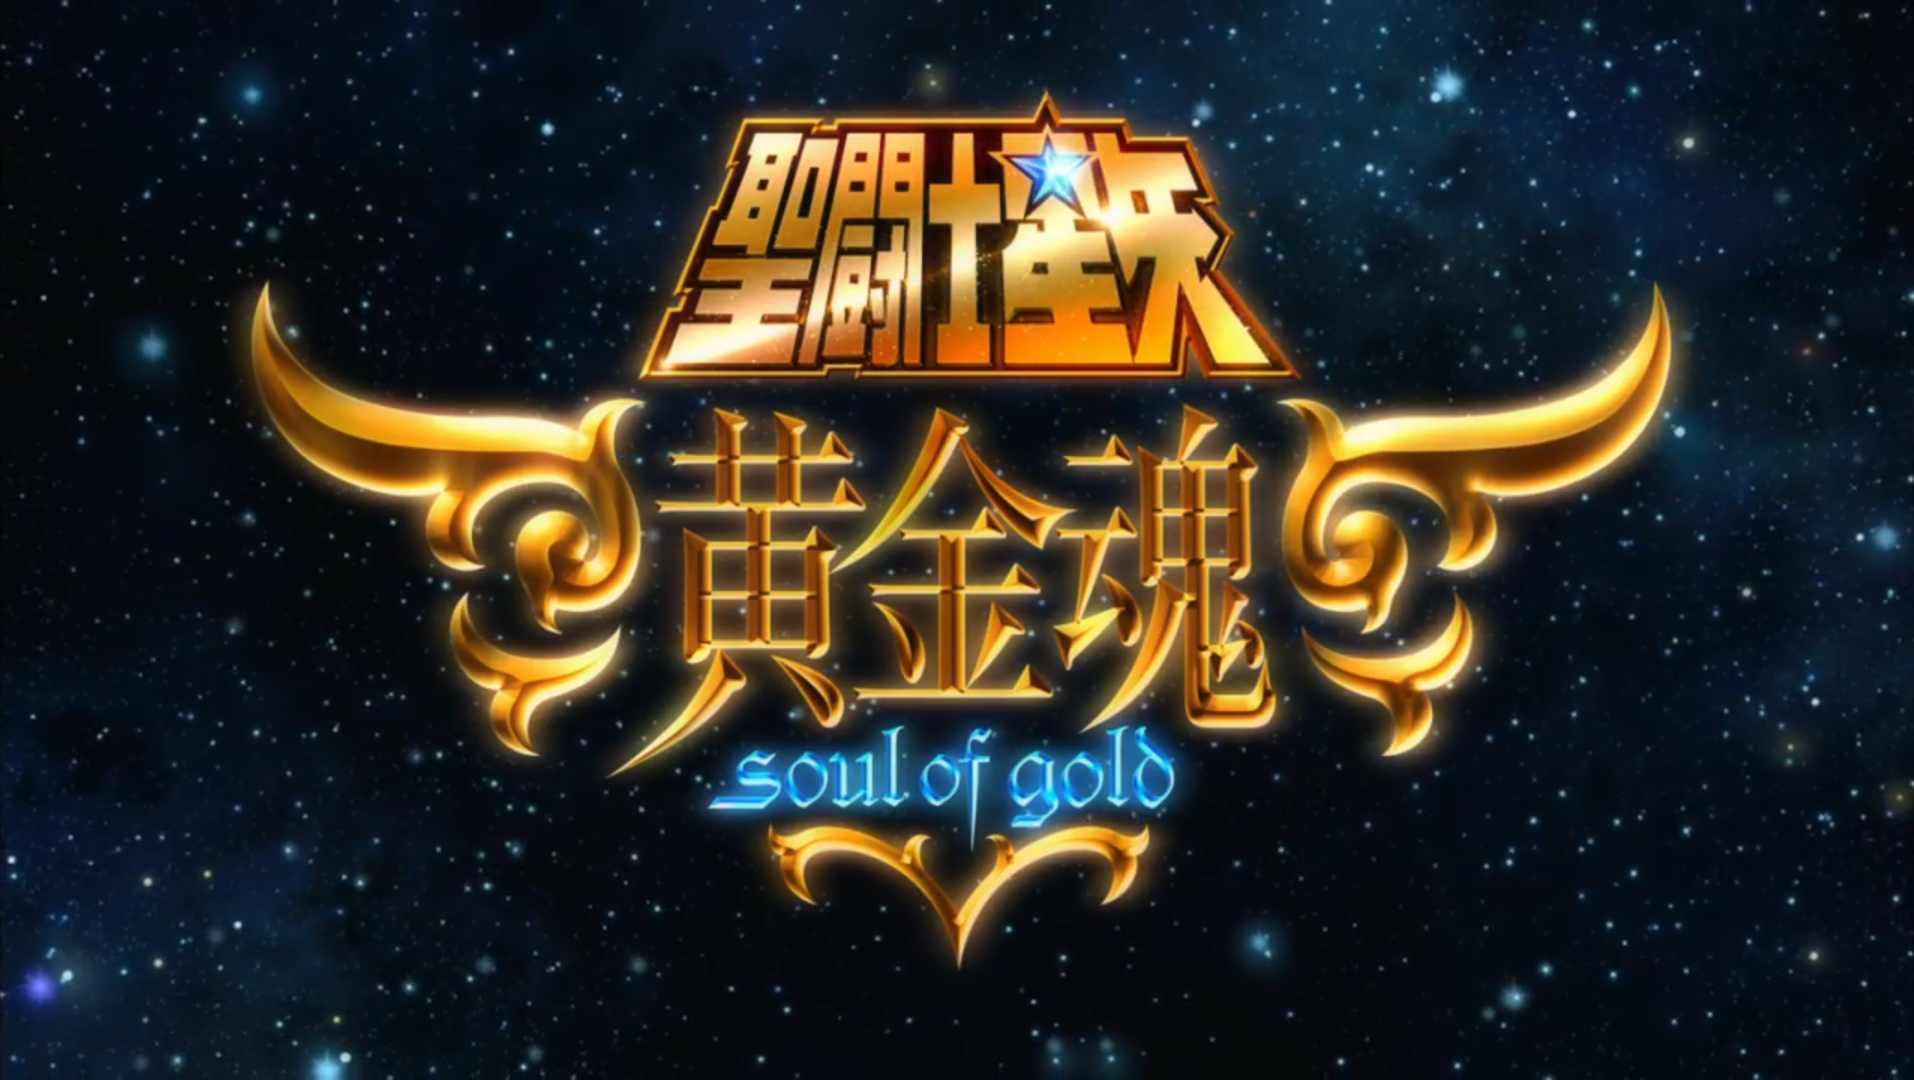 Saint Seiya: Soul of Gold - Wikipedia